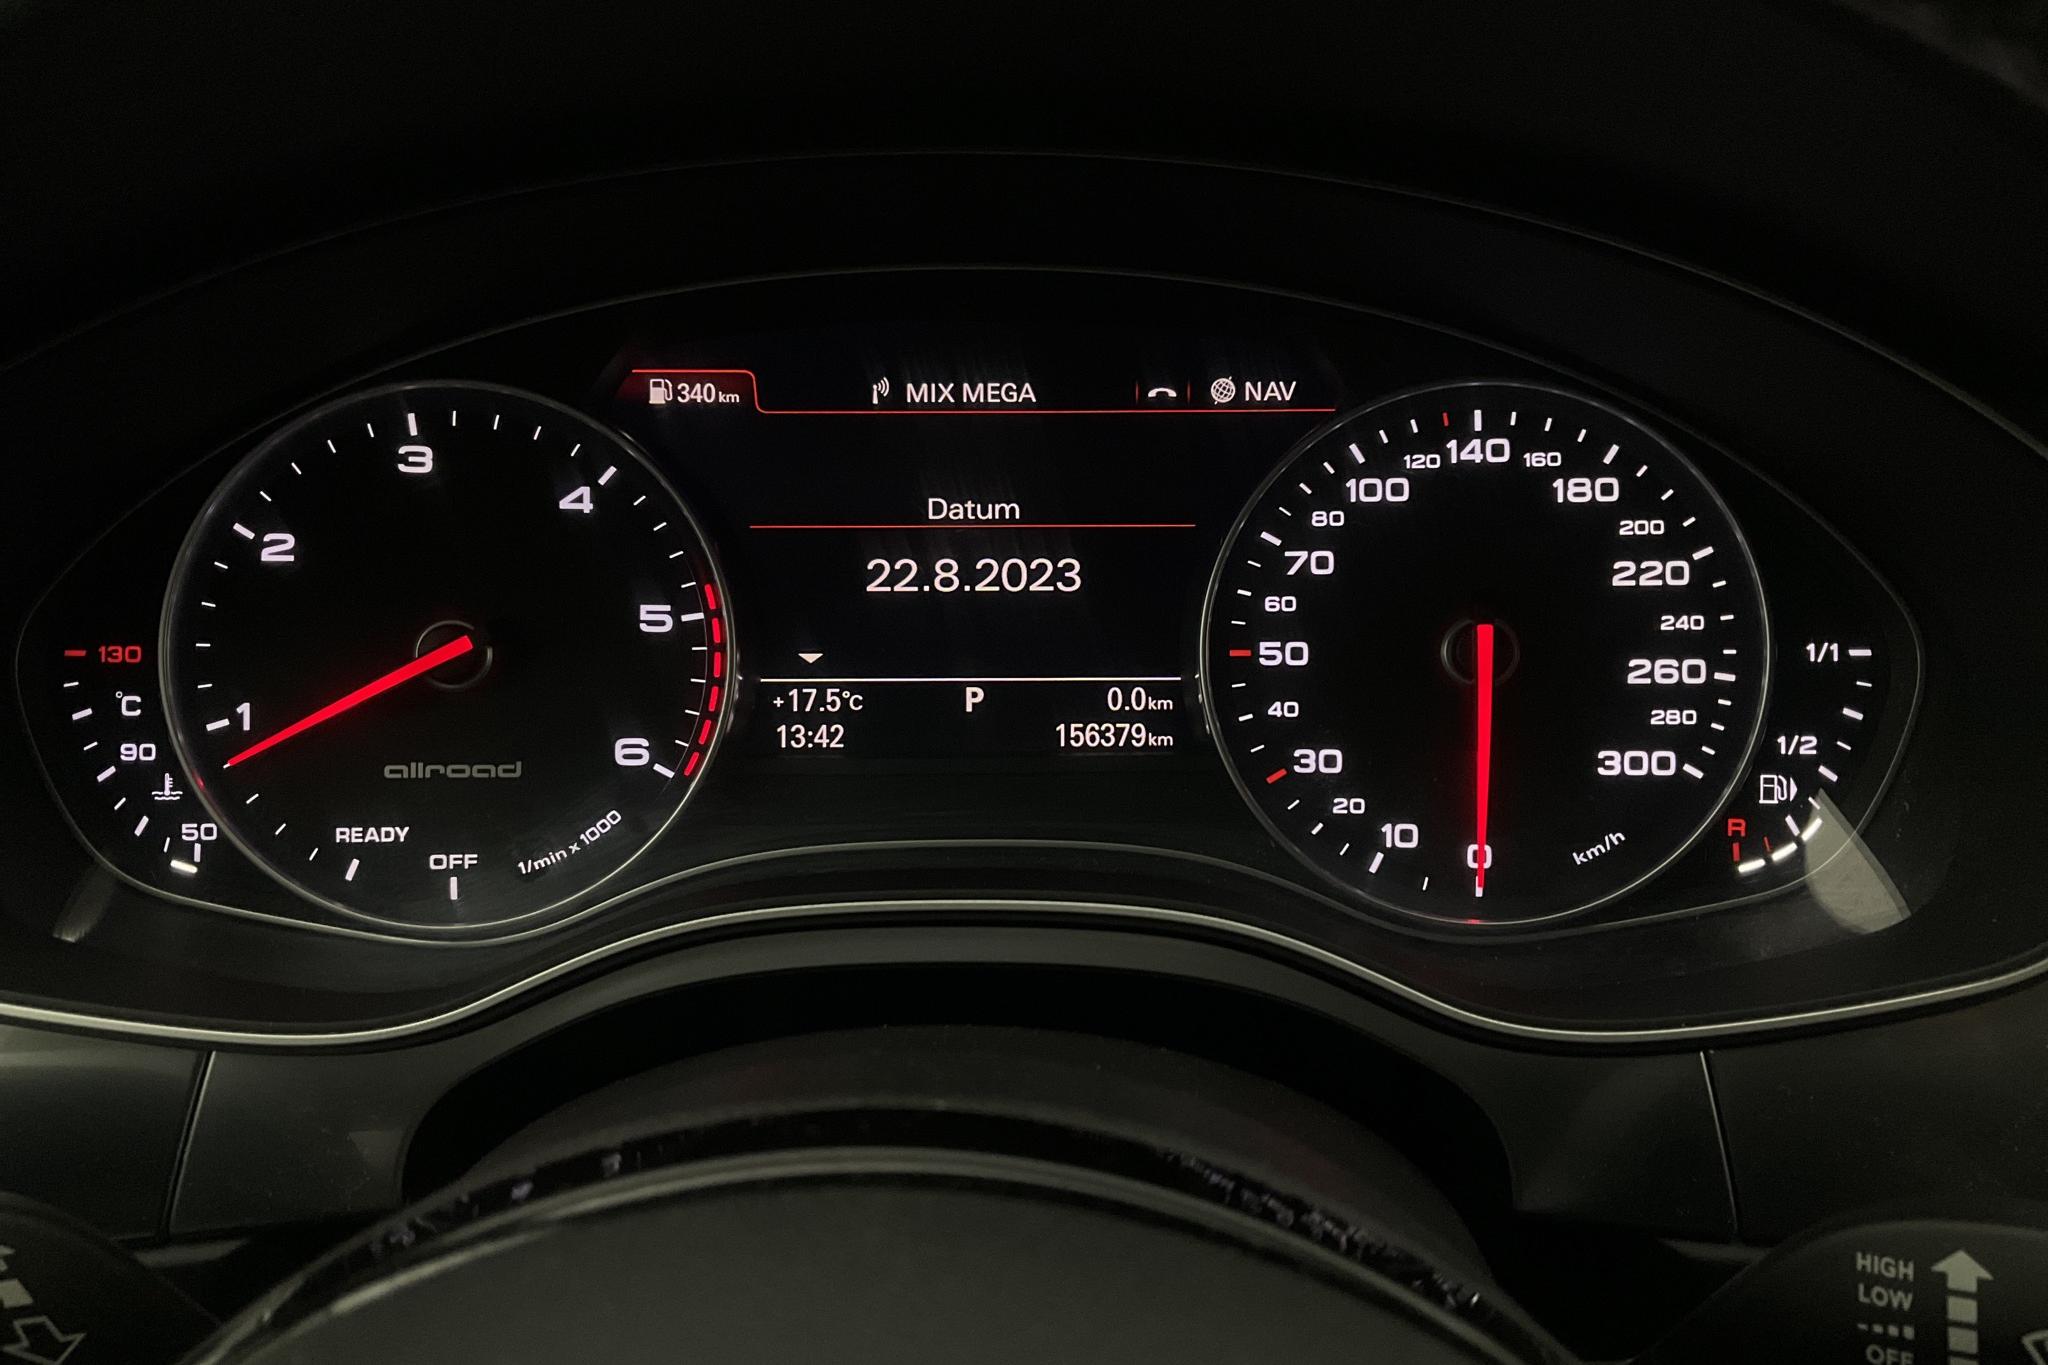 Audi A6 Allroad 3.0 TDI quattro (218hk) - 156 380 km - Automatic - white - 2017